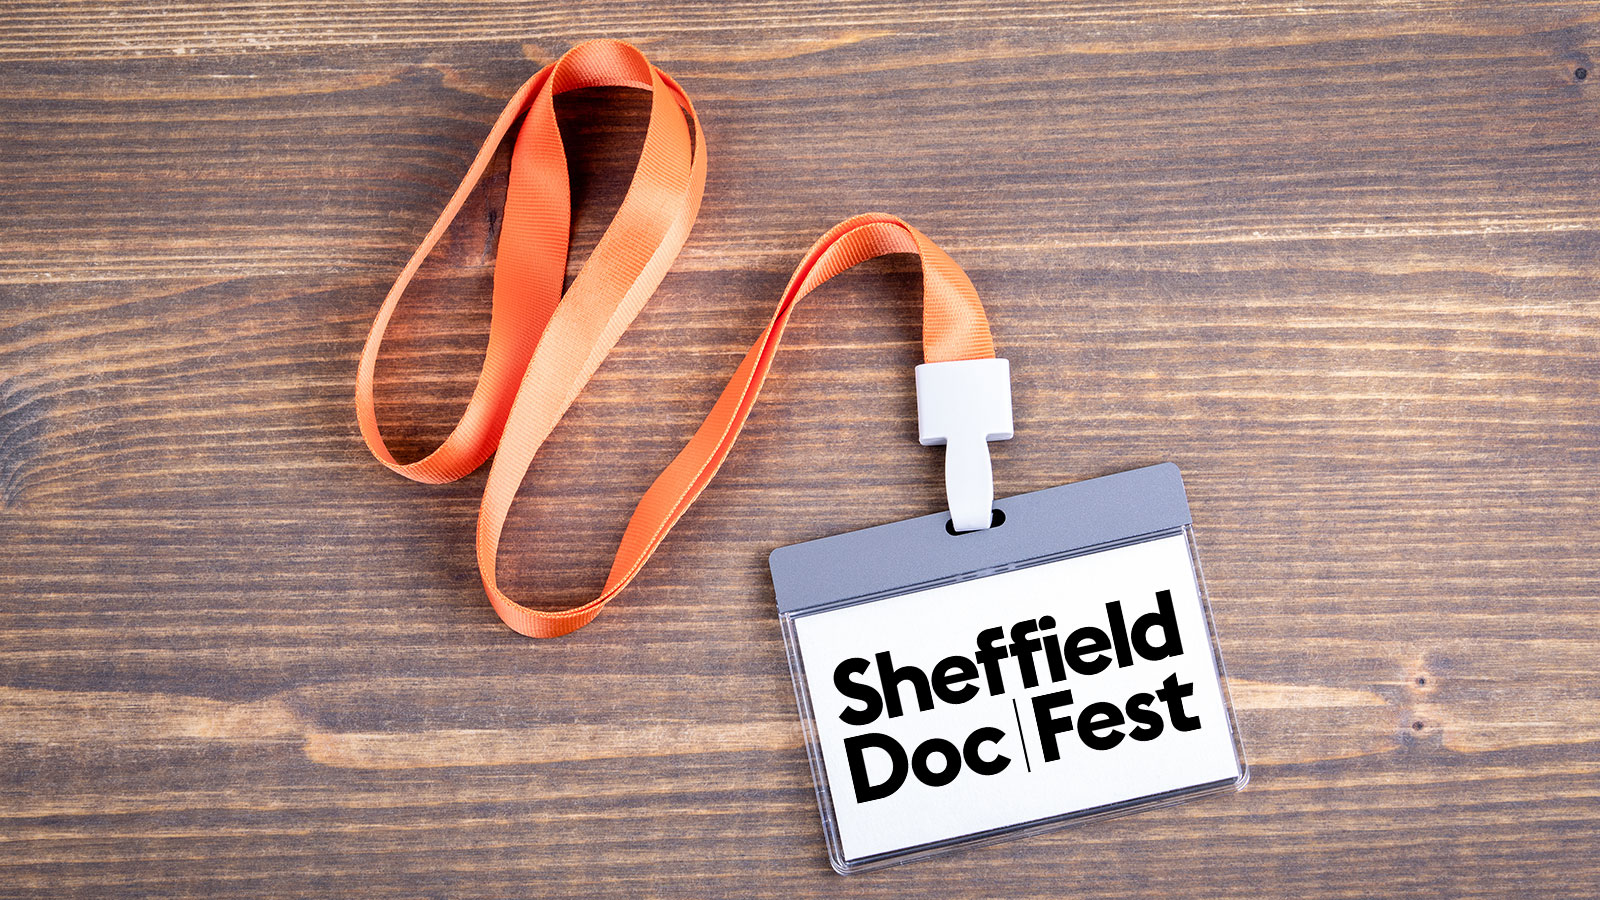 Sheffield Doc Fest delegate pass